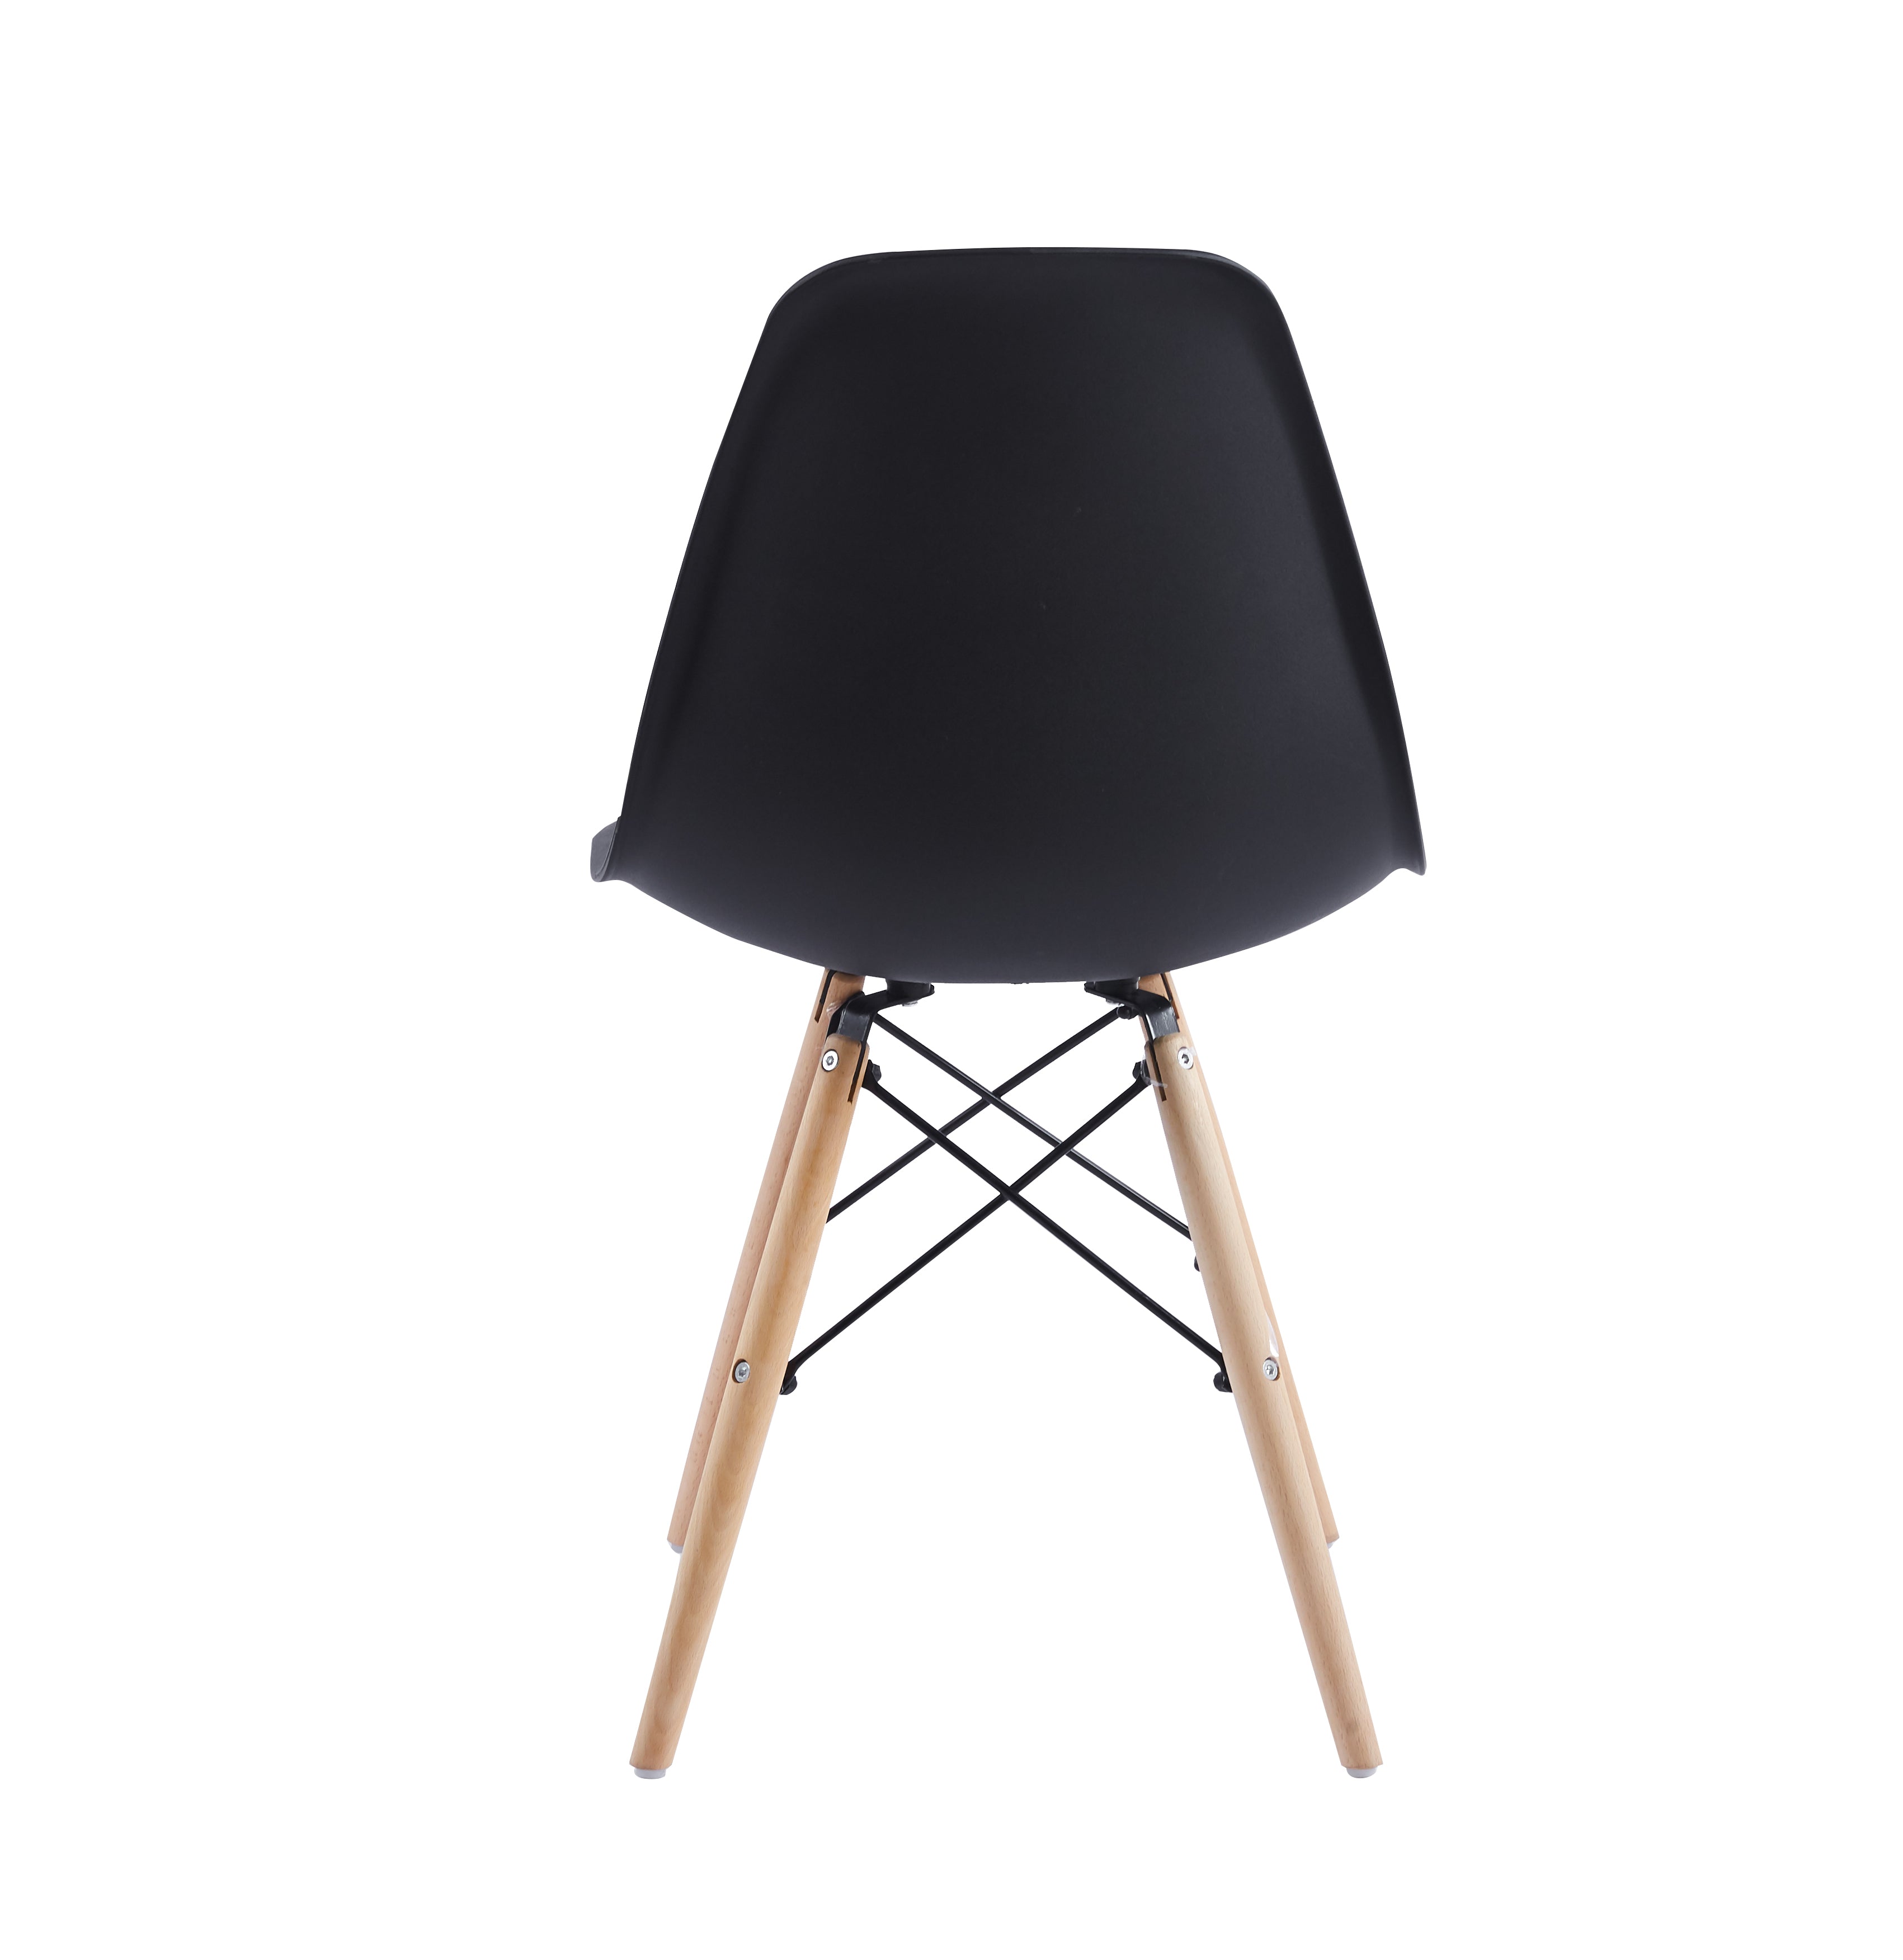 Velets Set of 4 Eifel Plastic Side Chair / Dining Chair - Wooden Leg - Black